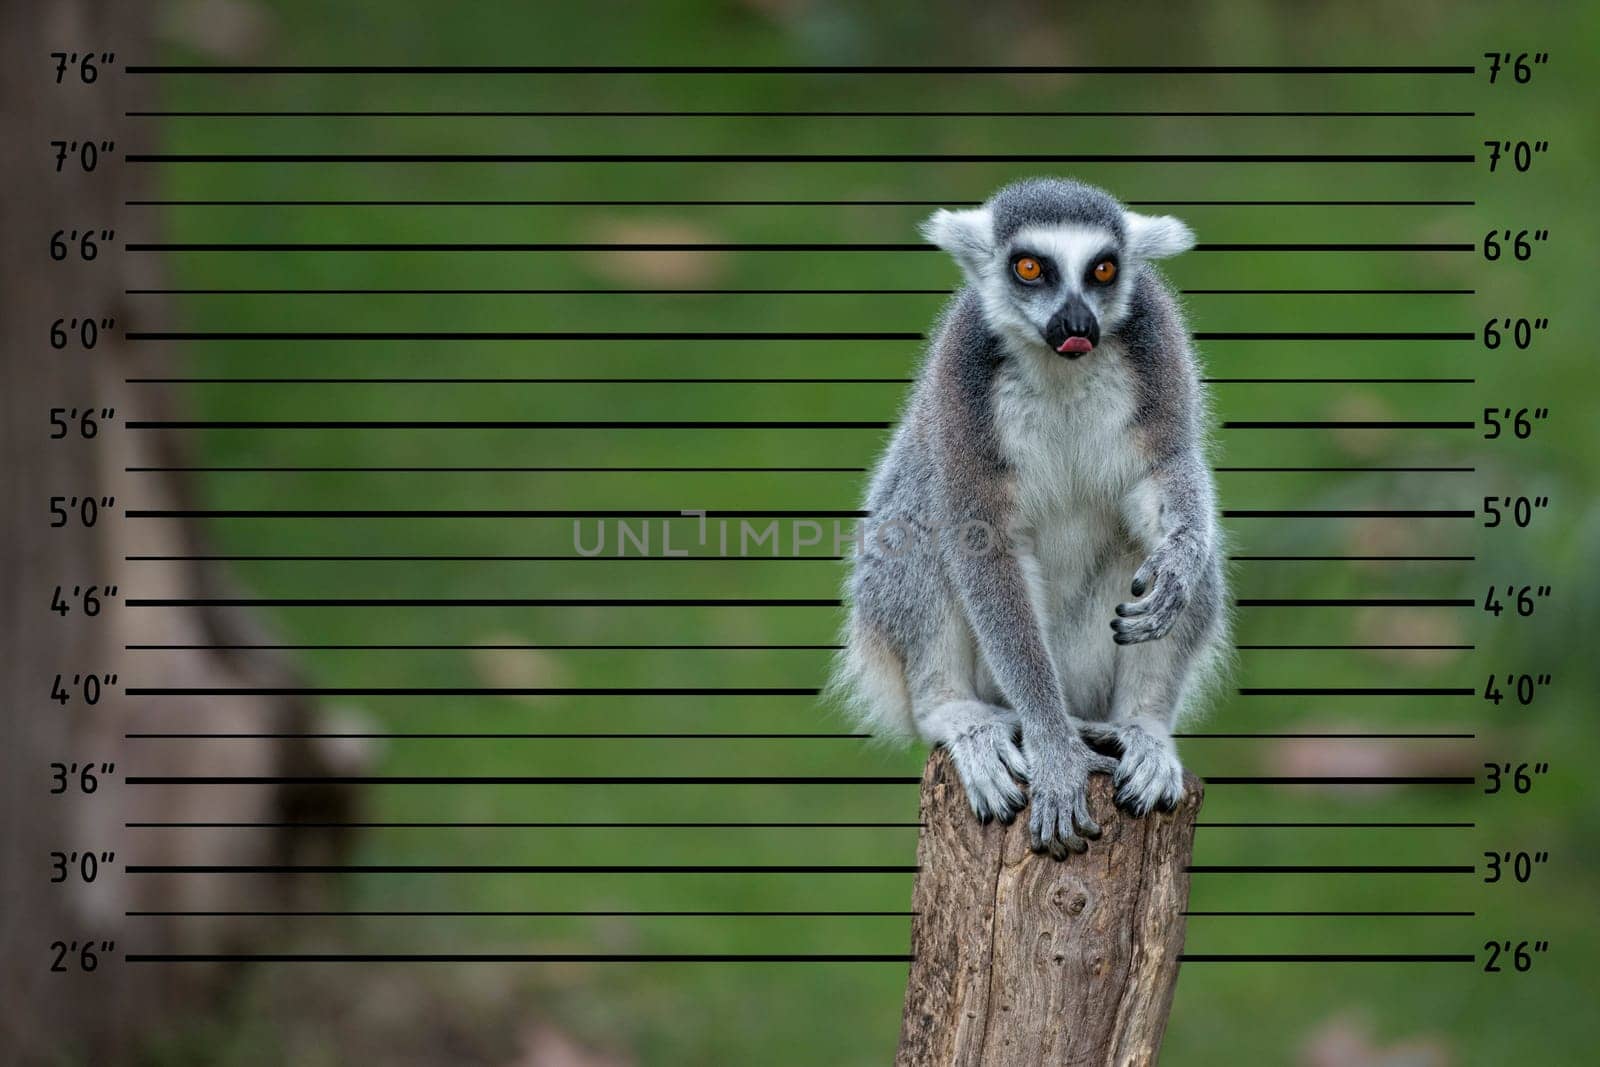 lemur monkey close up portrait